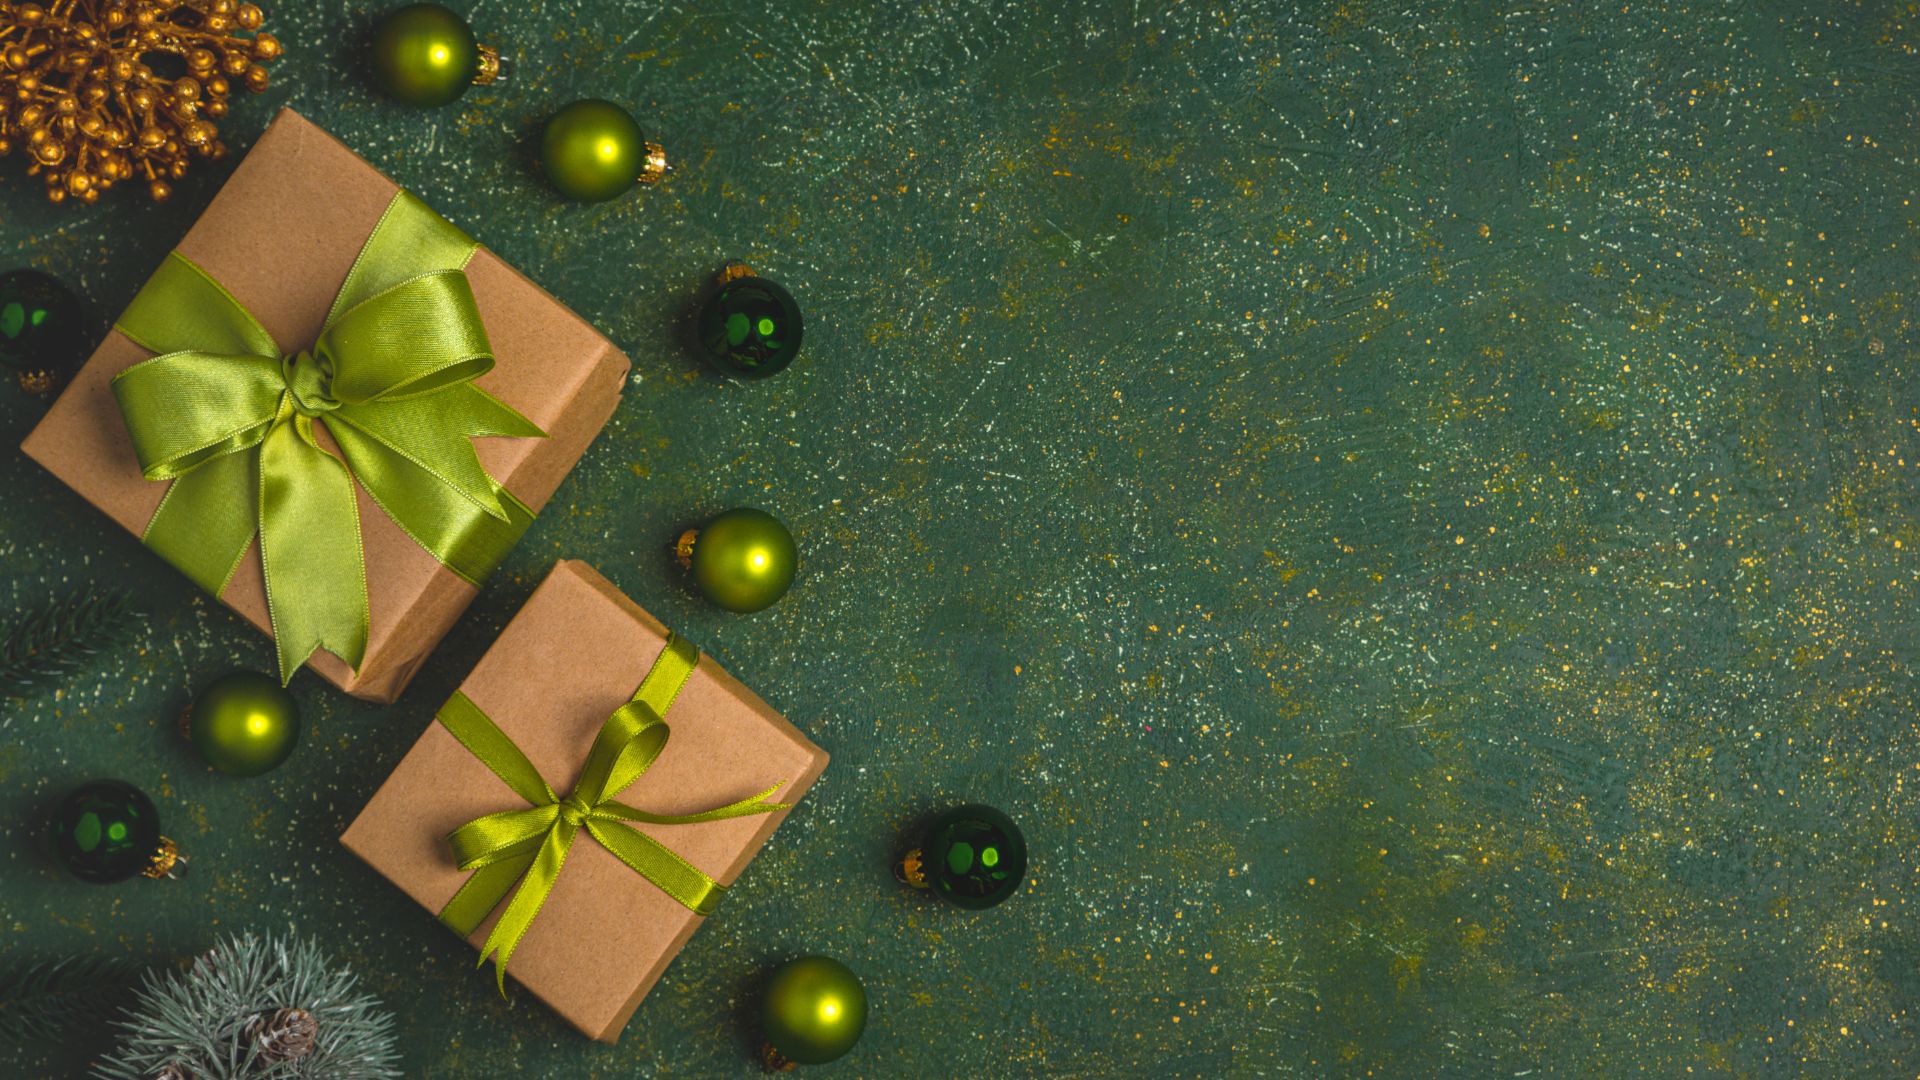 Imagem de fundo verde. Ao lado esquerdo da tela duas caixas de presentes embrulhadas em papel pardo e decoradas com laços na cor verde. Completam a imagem, bolas de natal na cor verde.